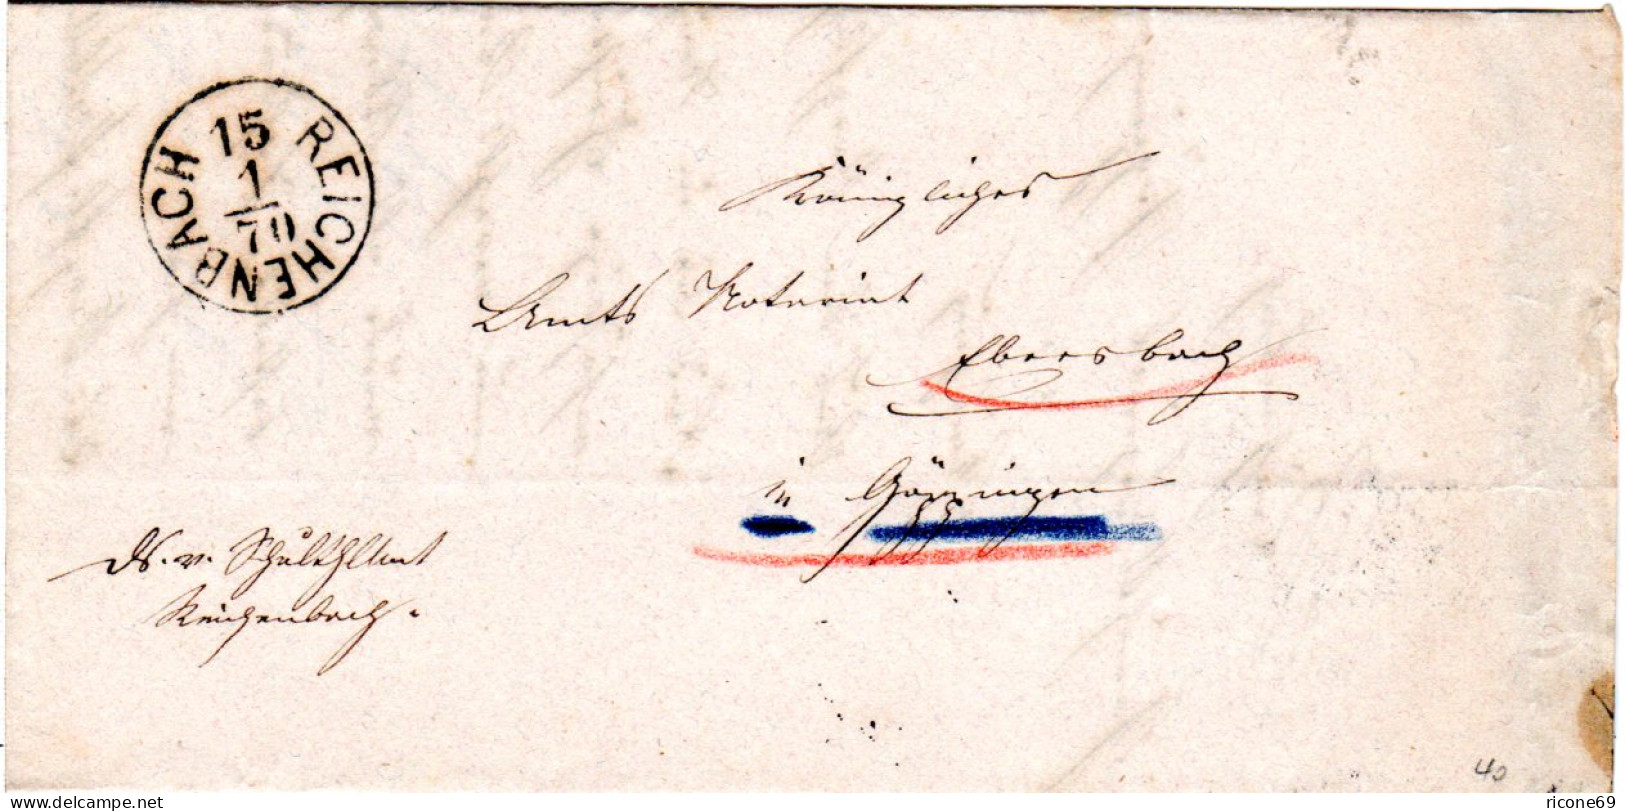 Württemberg 1870, K1 REICHENBACH M. Kopfstehendem Datum Auf Brief N. Ebersbach - Lettres & Documents